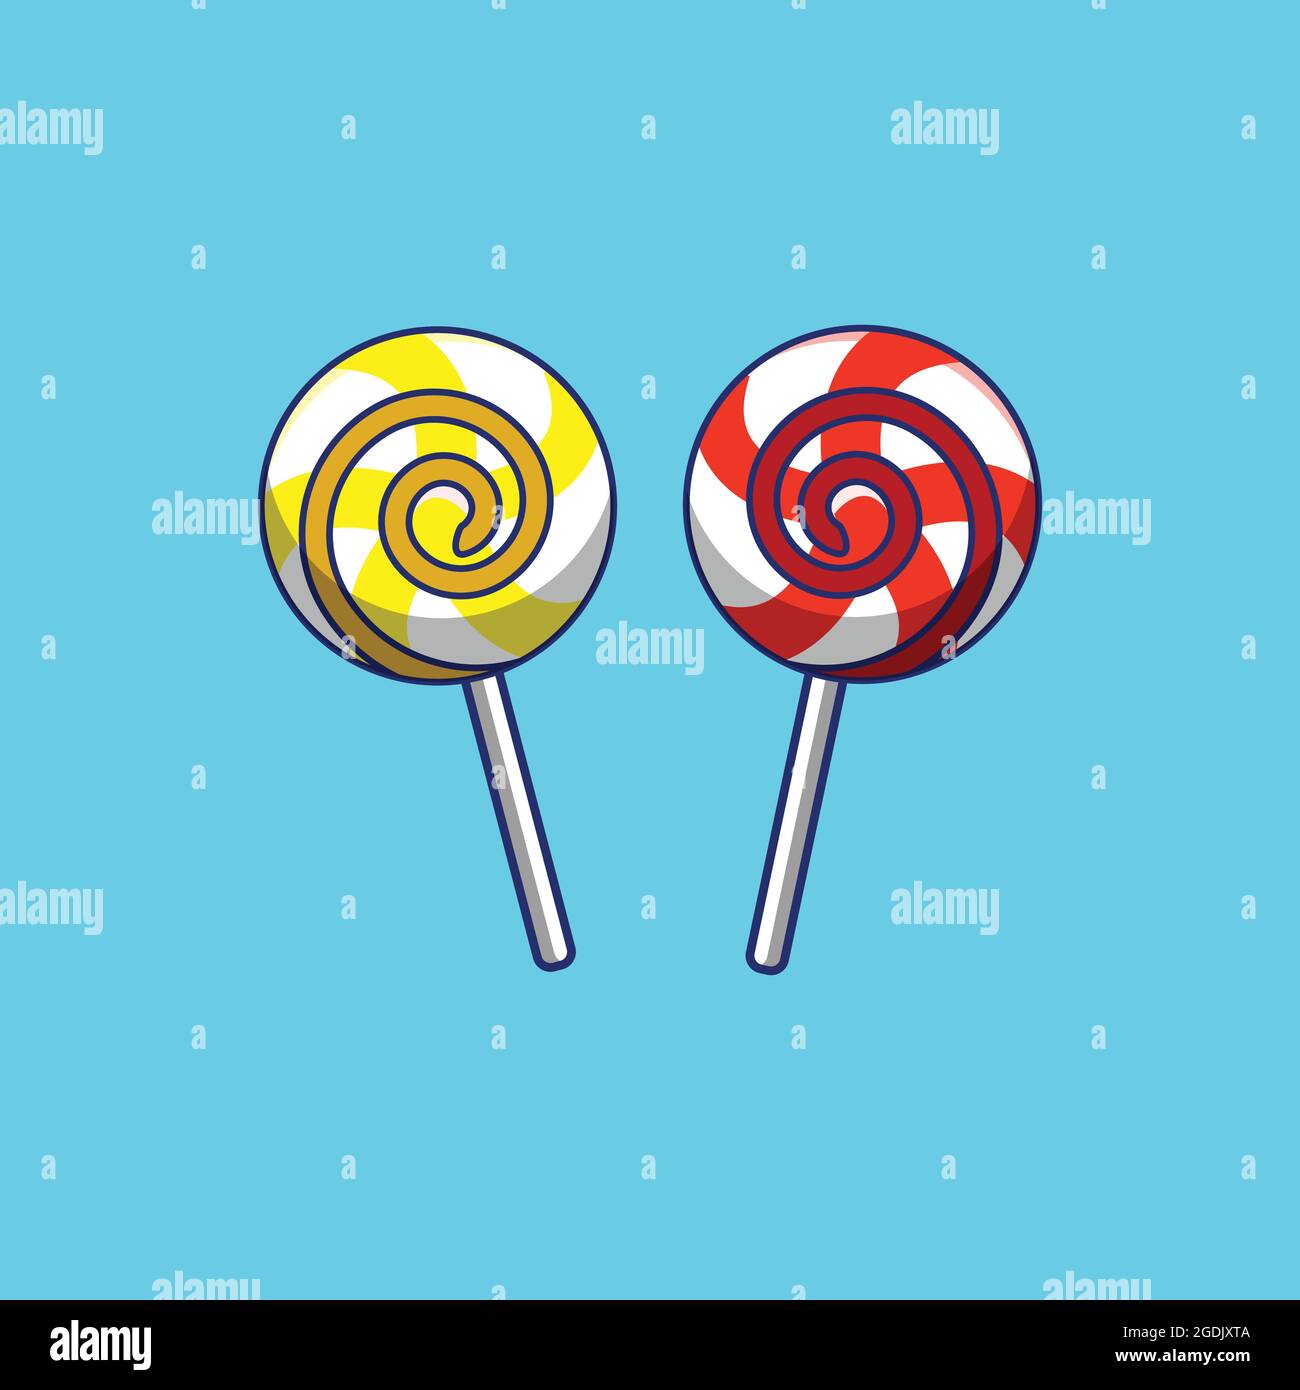 Zwei Lollipop Candy Illustration auf blauem Hintergrund, Lollipop Vektor Illustration, Lollipop Candy isoliert Stock Vektor